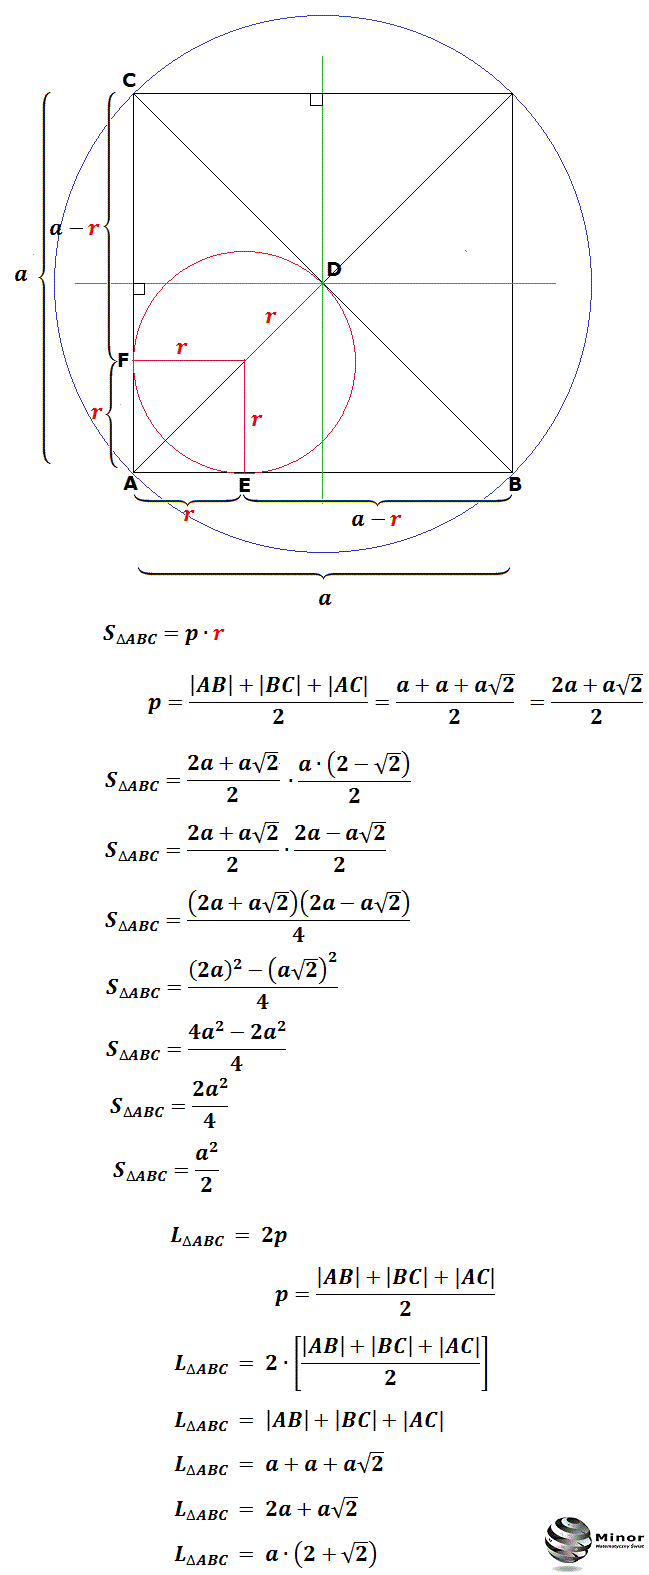 Promień okręgu opisanego i wpisanego w trójkąt prostokątny równoramienny a jego pole i obwód